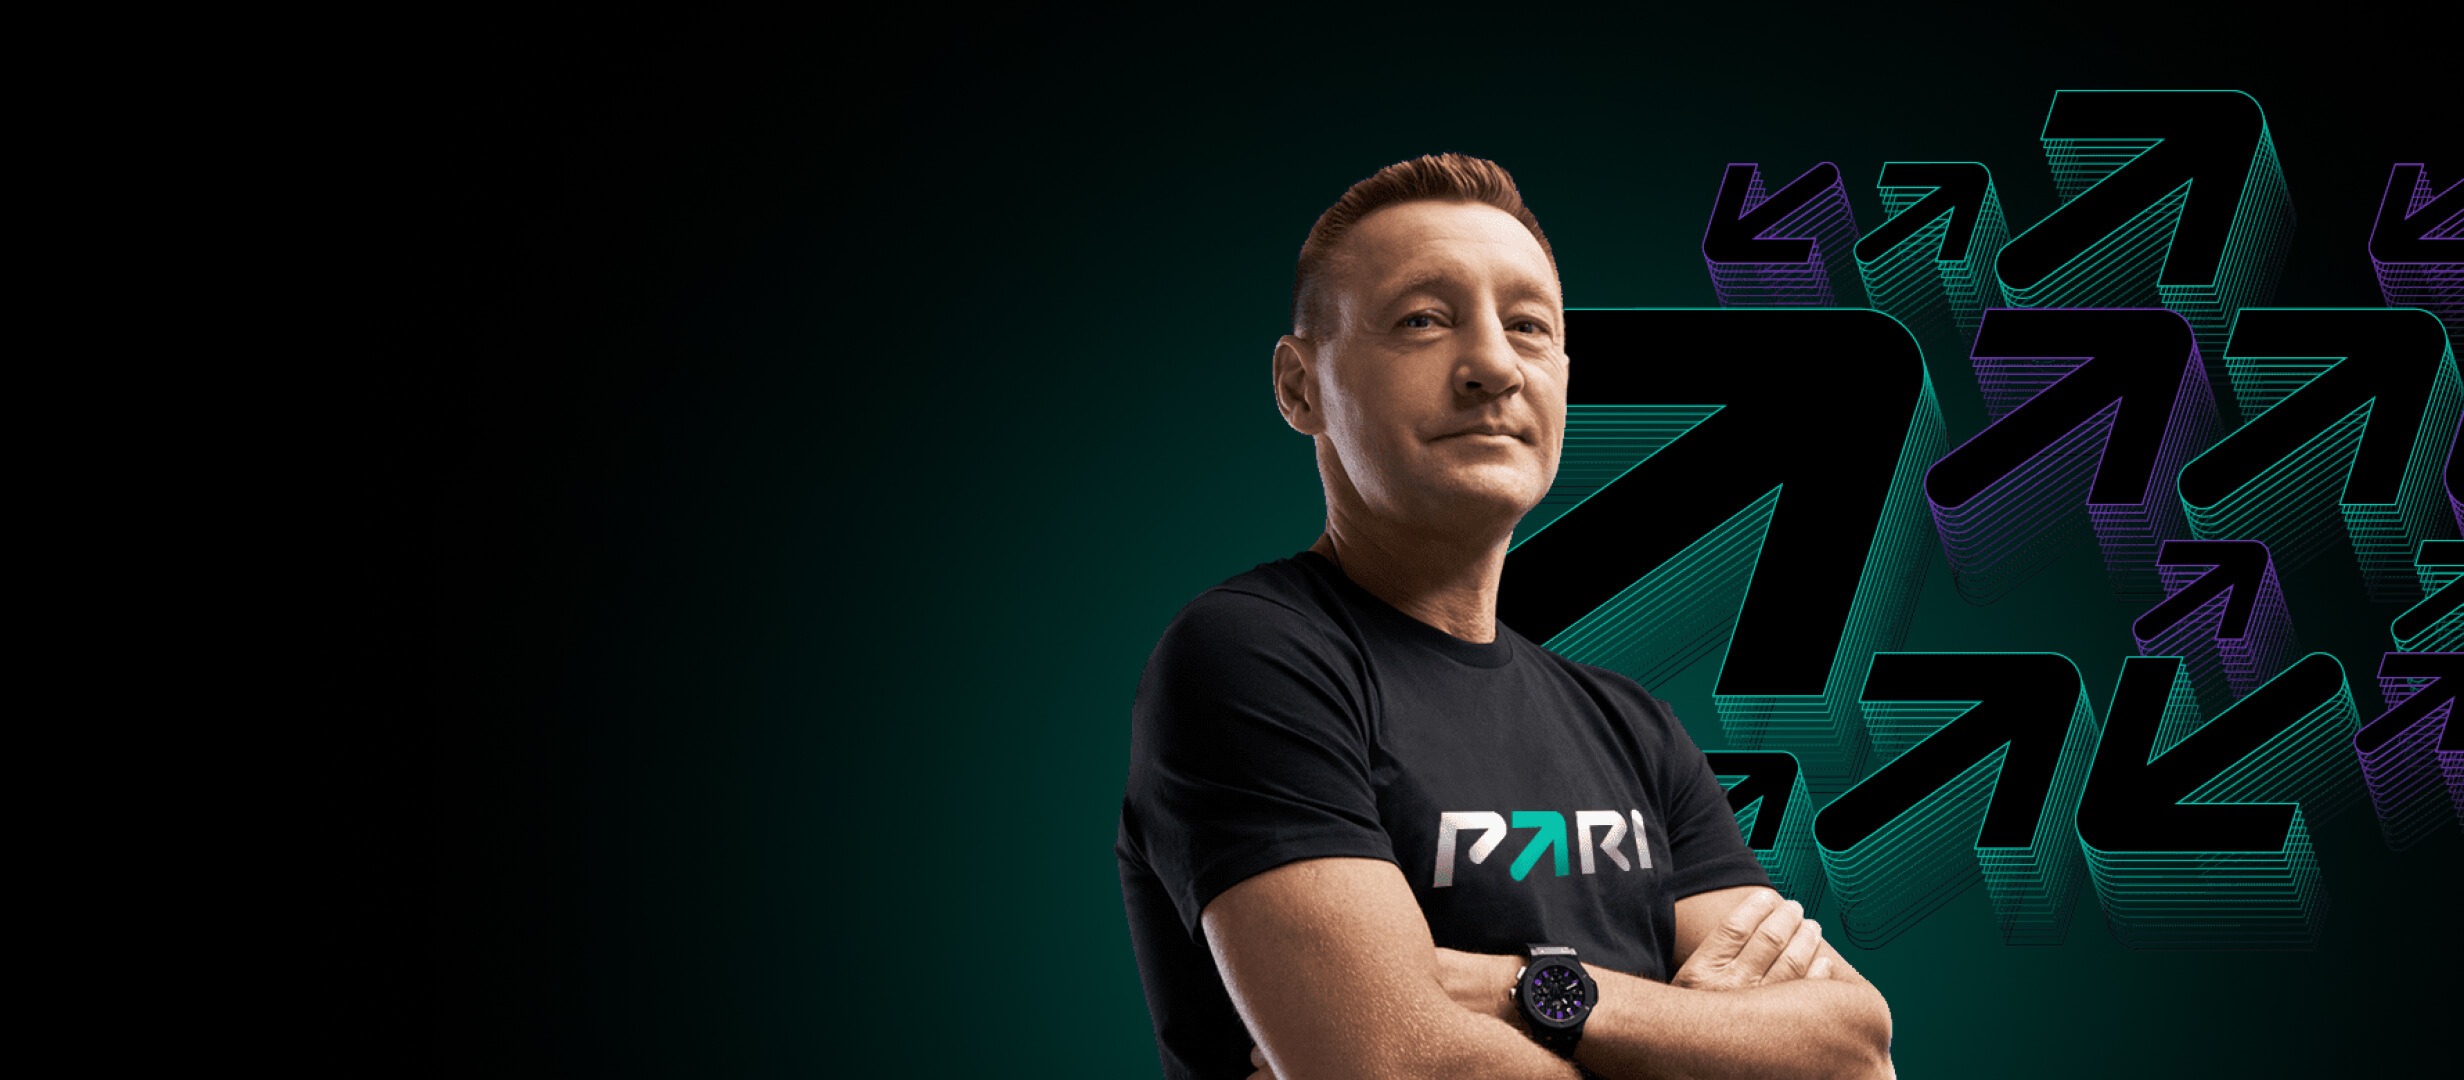 BK Pari razygryvaet 1 000 000 rublej v konkurse prognozov na match Team Liquid FaZe